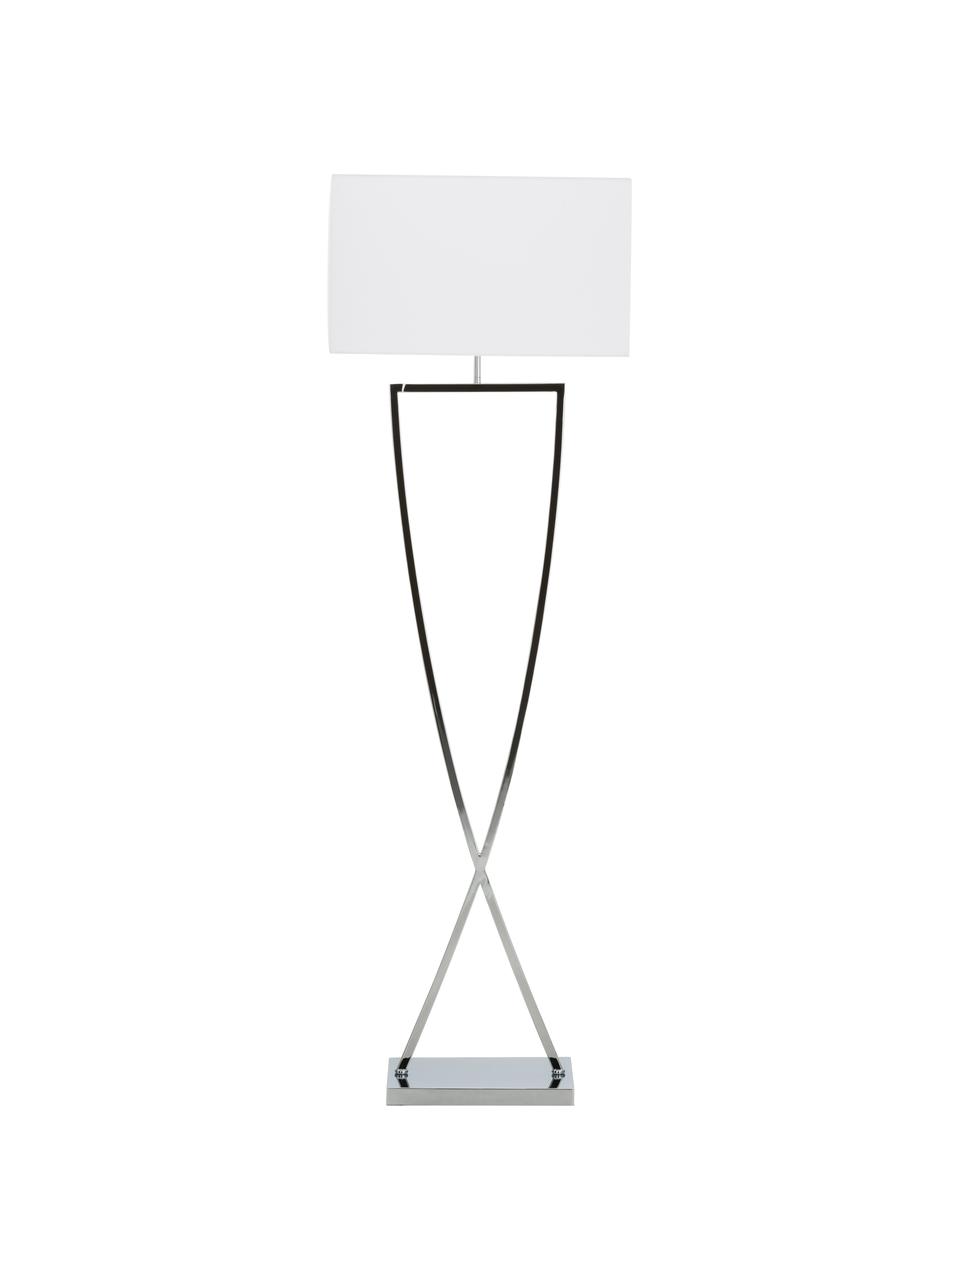 Stehlampe Toulouse in Silber, Lampenschirm: Textil, Lampenfuß: Metall, verchromt, Silberfarben, Weiß, B 50 x H 157 cm